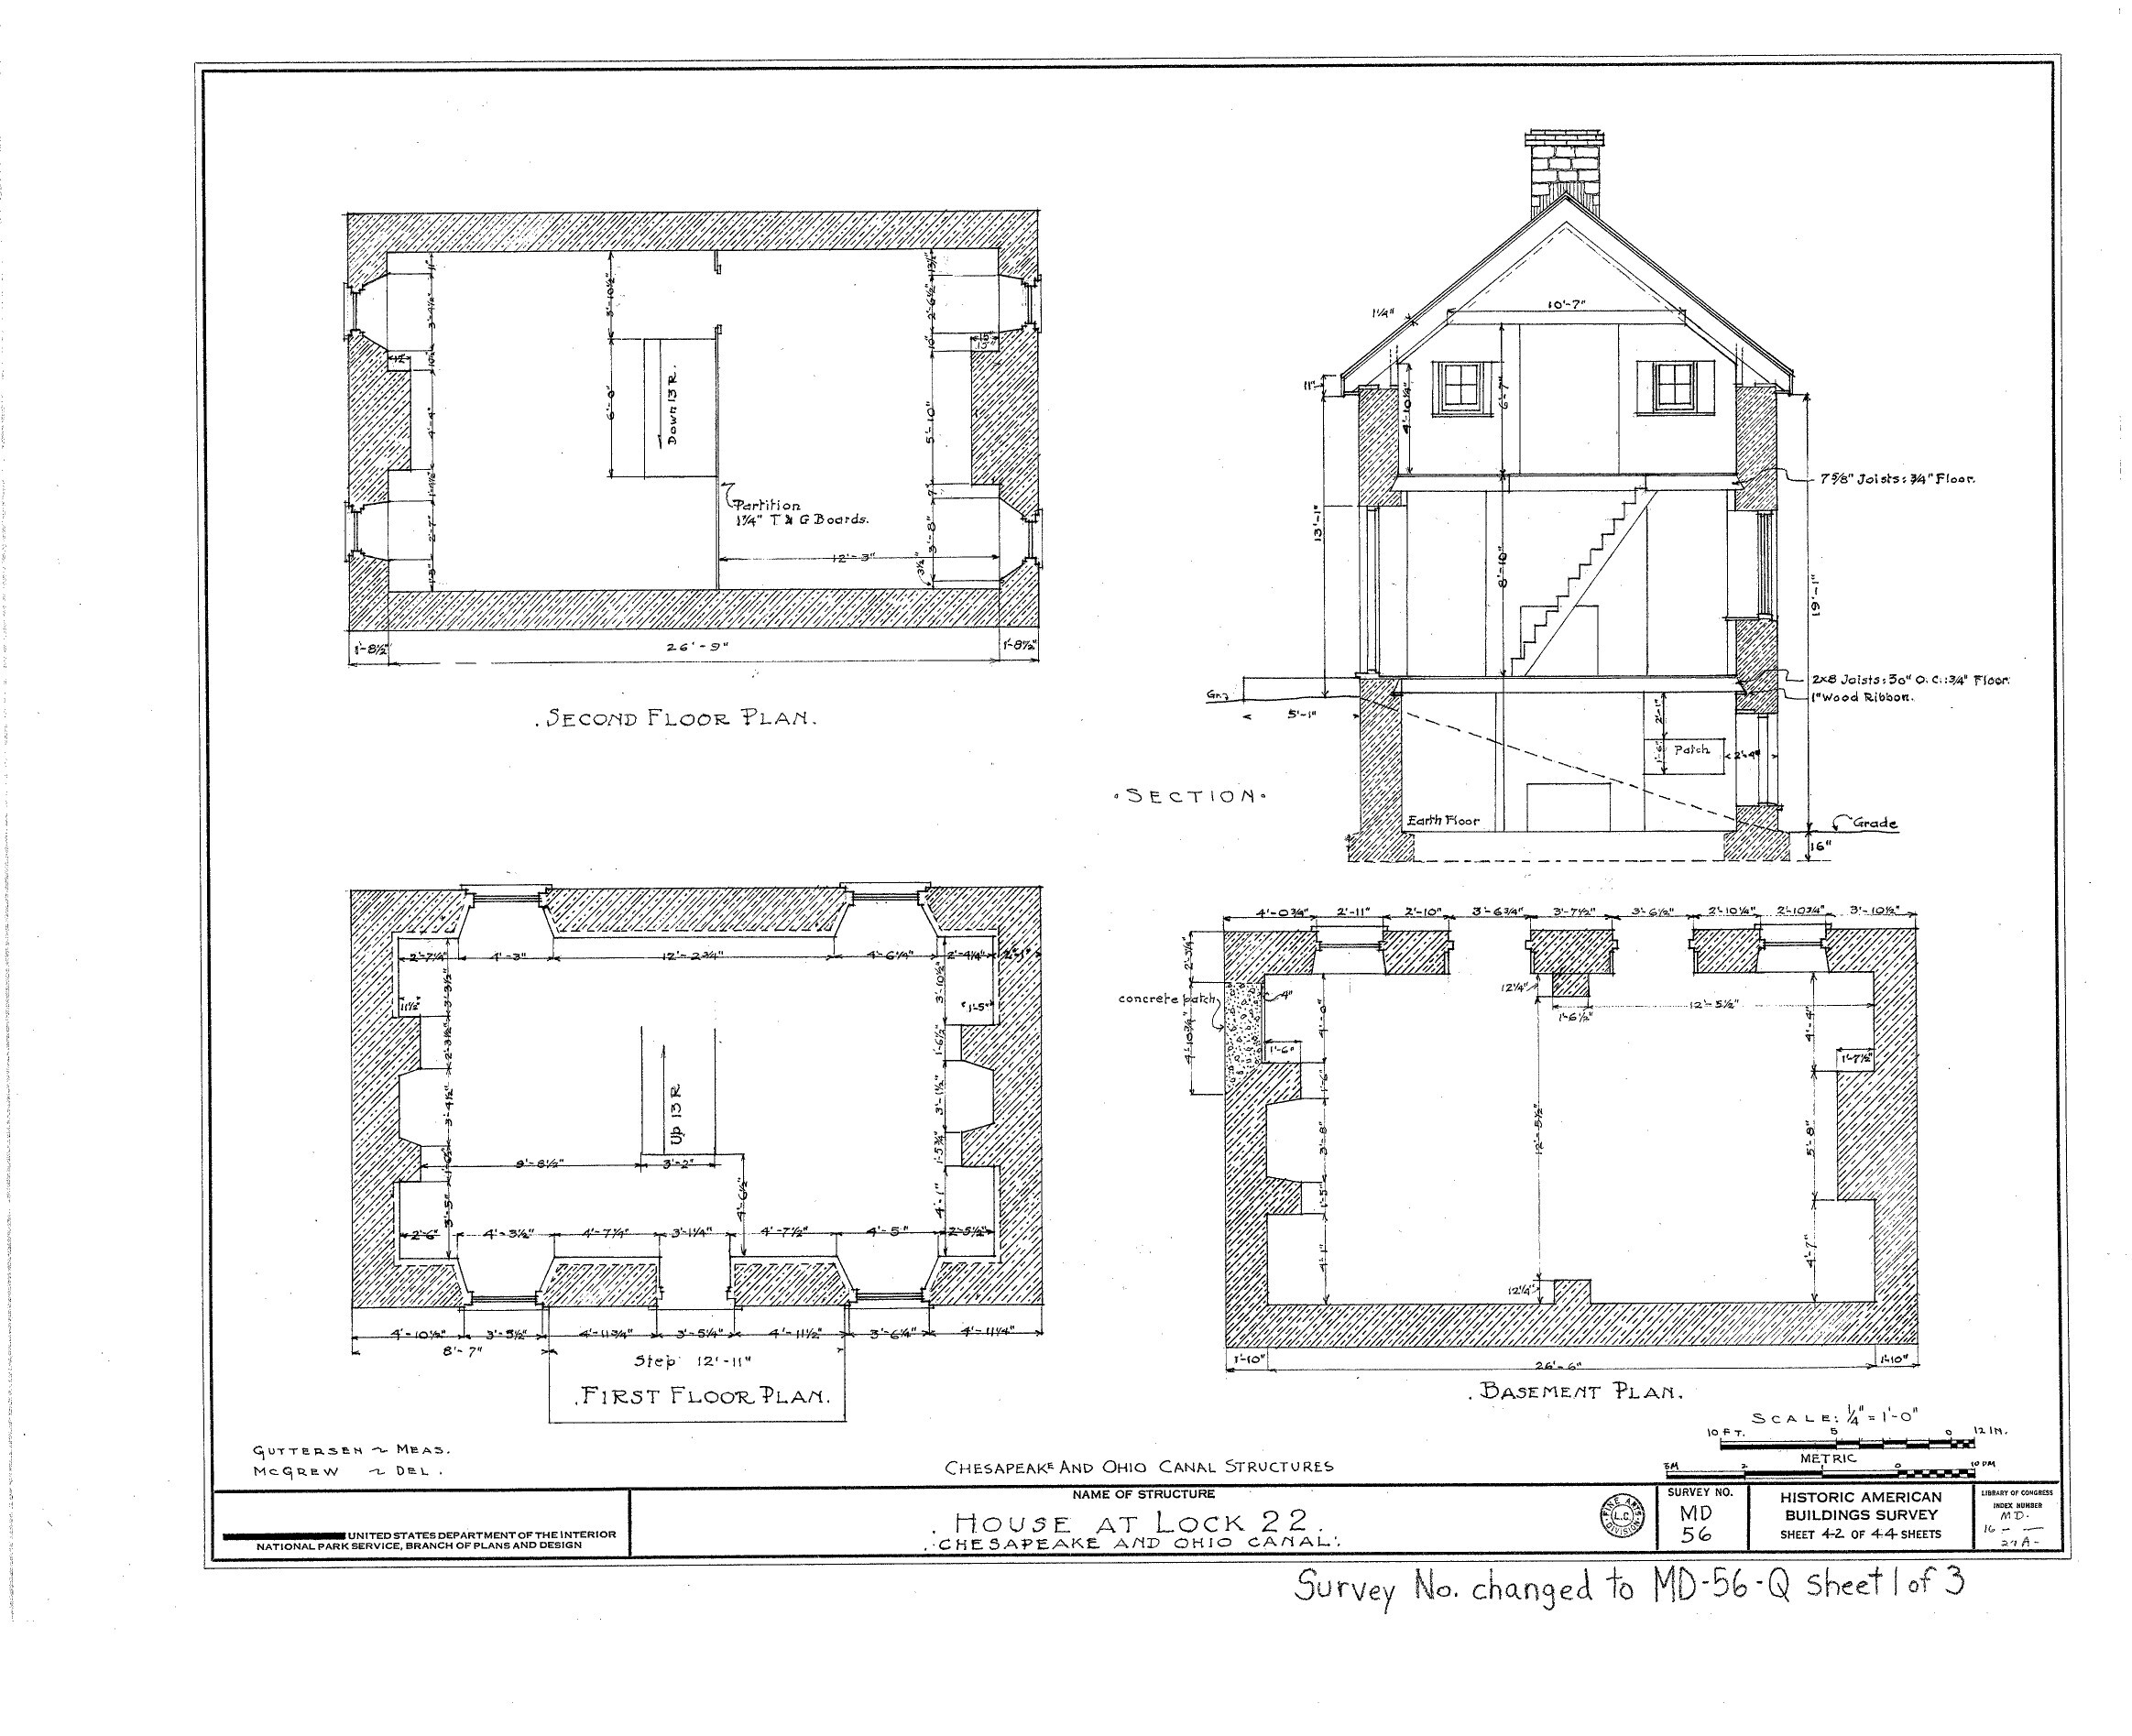 Floor plan for lock house 22